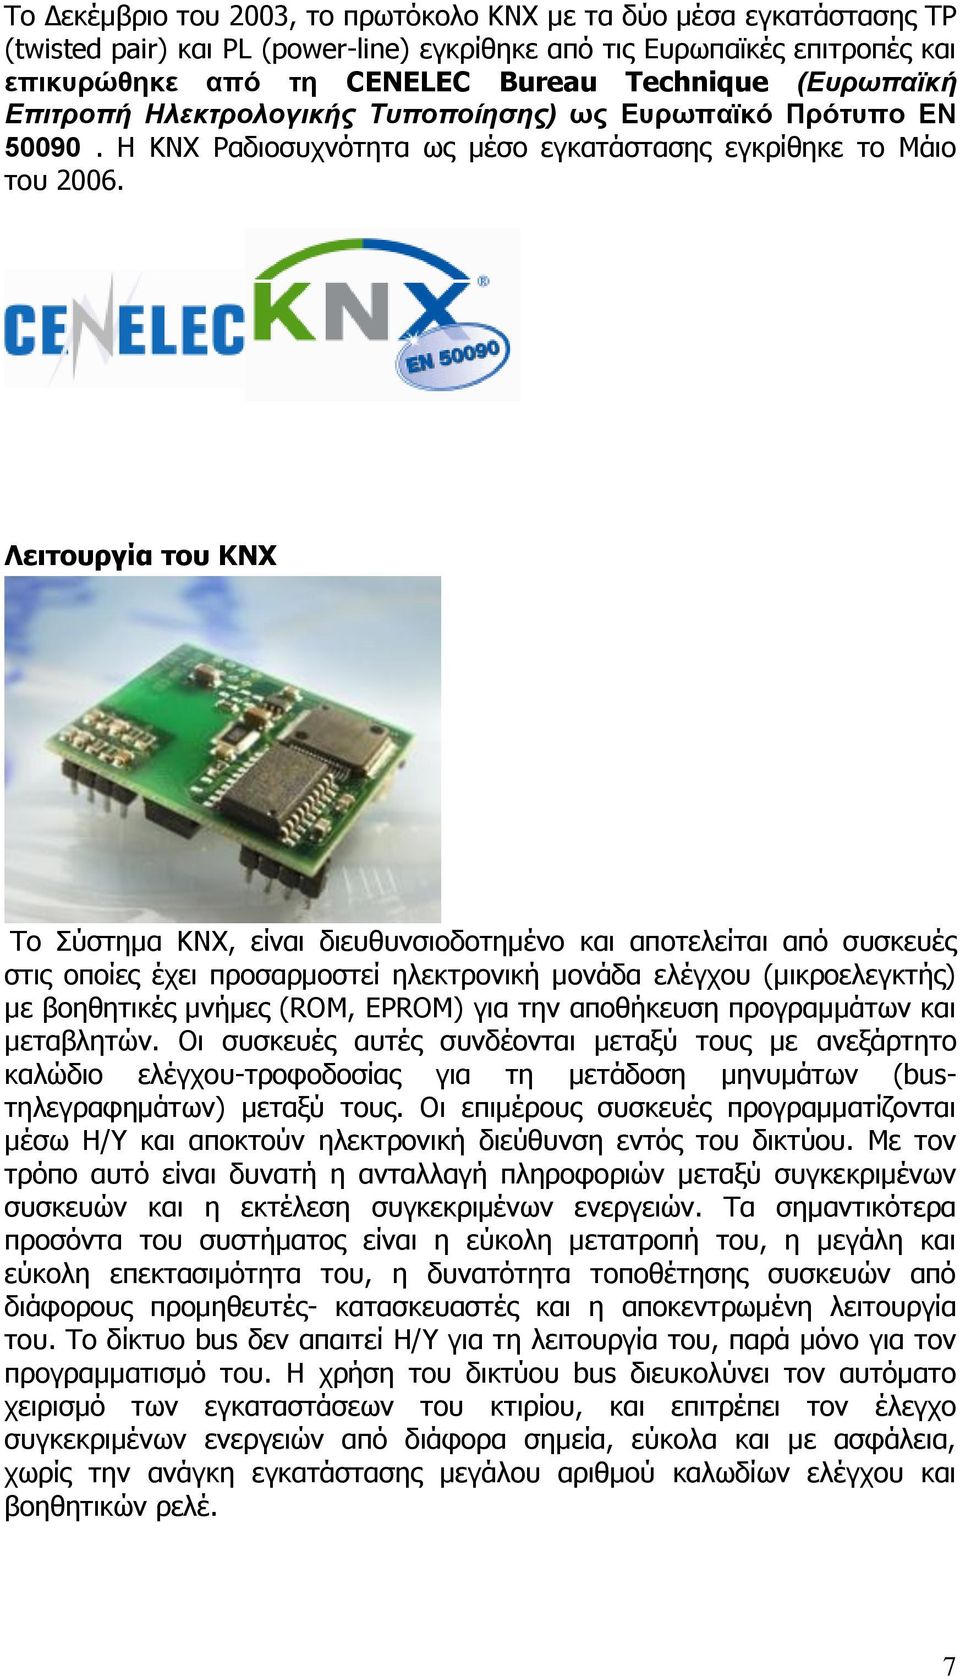 Λειτουργία του KNX Το Σύστημα KNX, είναι διευθυνσιοδοτημένο και αποτελείται από συσκευές στις οποίες έχει προσαρμοστεί ηλεκτρονική μονάδα ελέγχου (μικροελεγκτής) με βοηθητικές μνήμες (ROM, EPROM) για